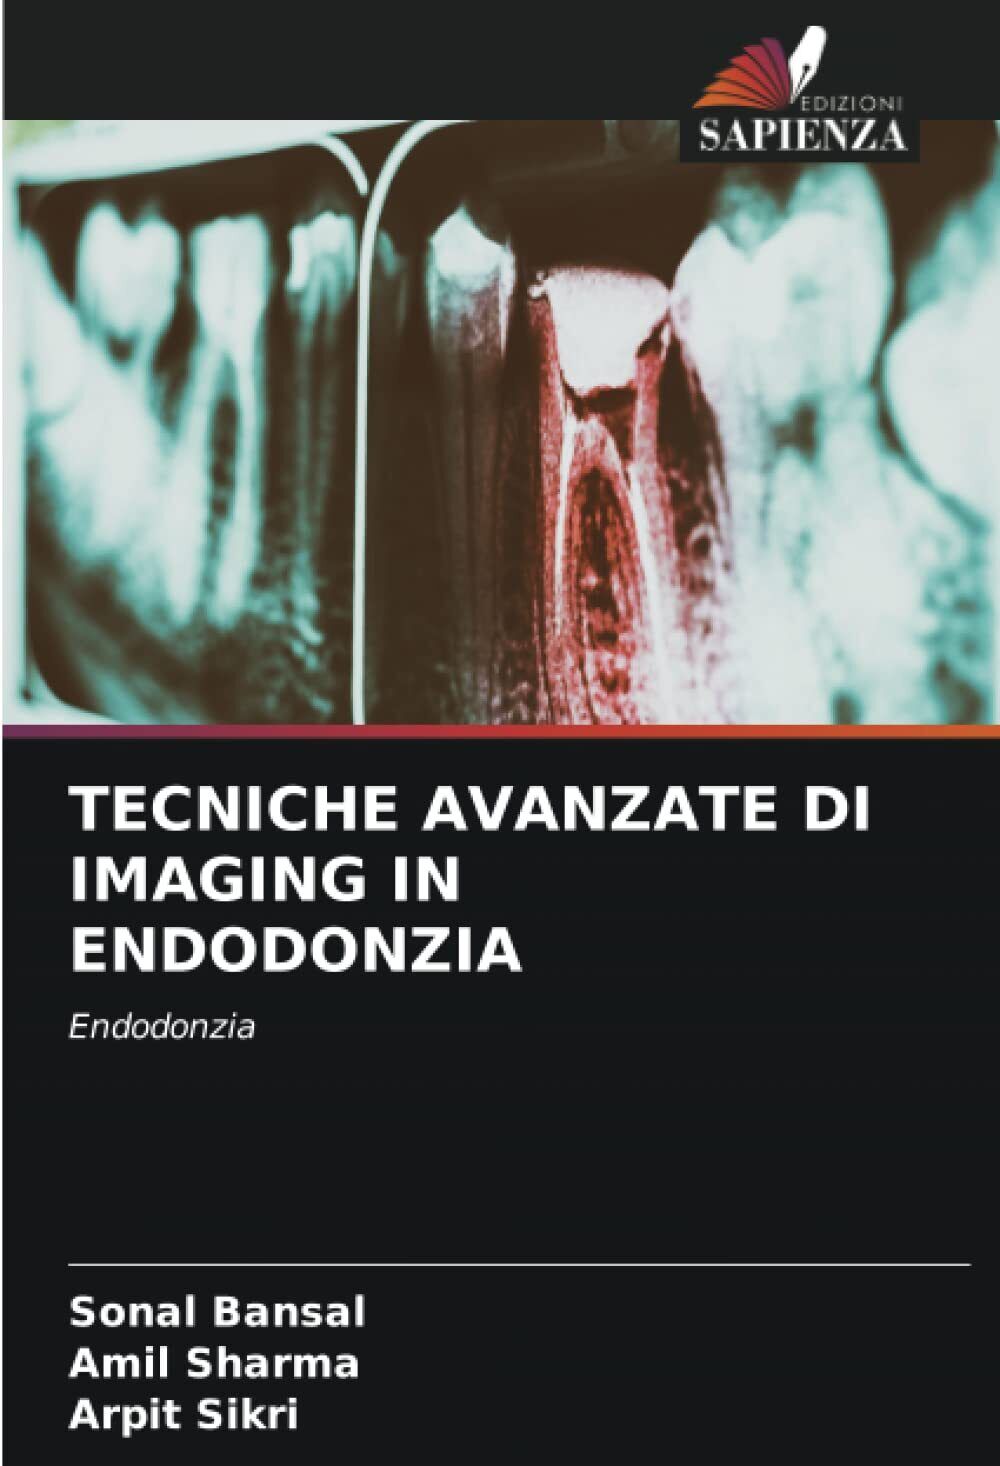 TECNICHE AVANZATE DI IMAGING IN ENDODONZIA - Edizioni Sapienza, 2021